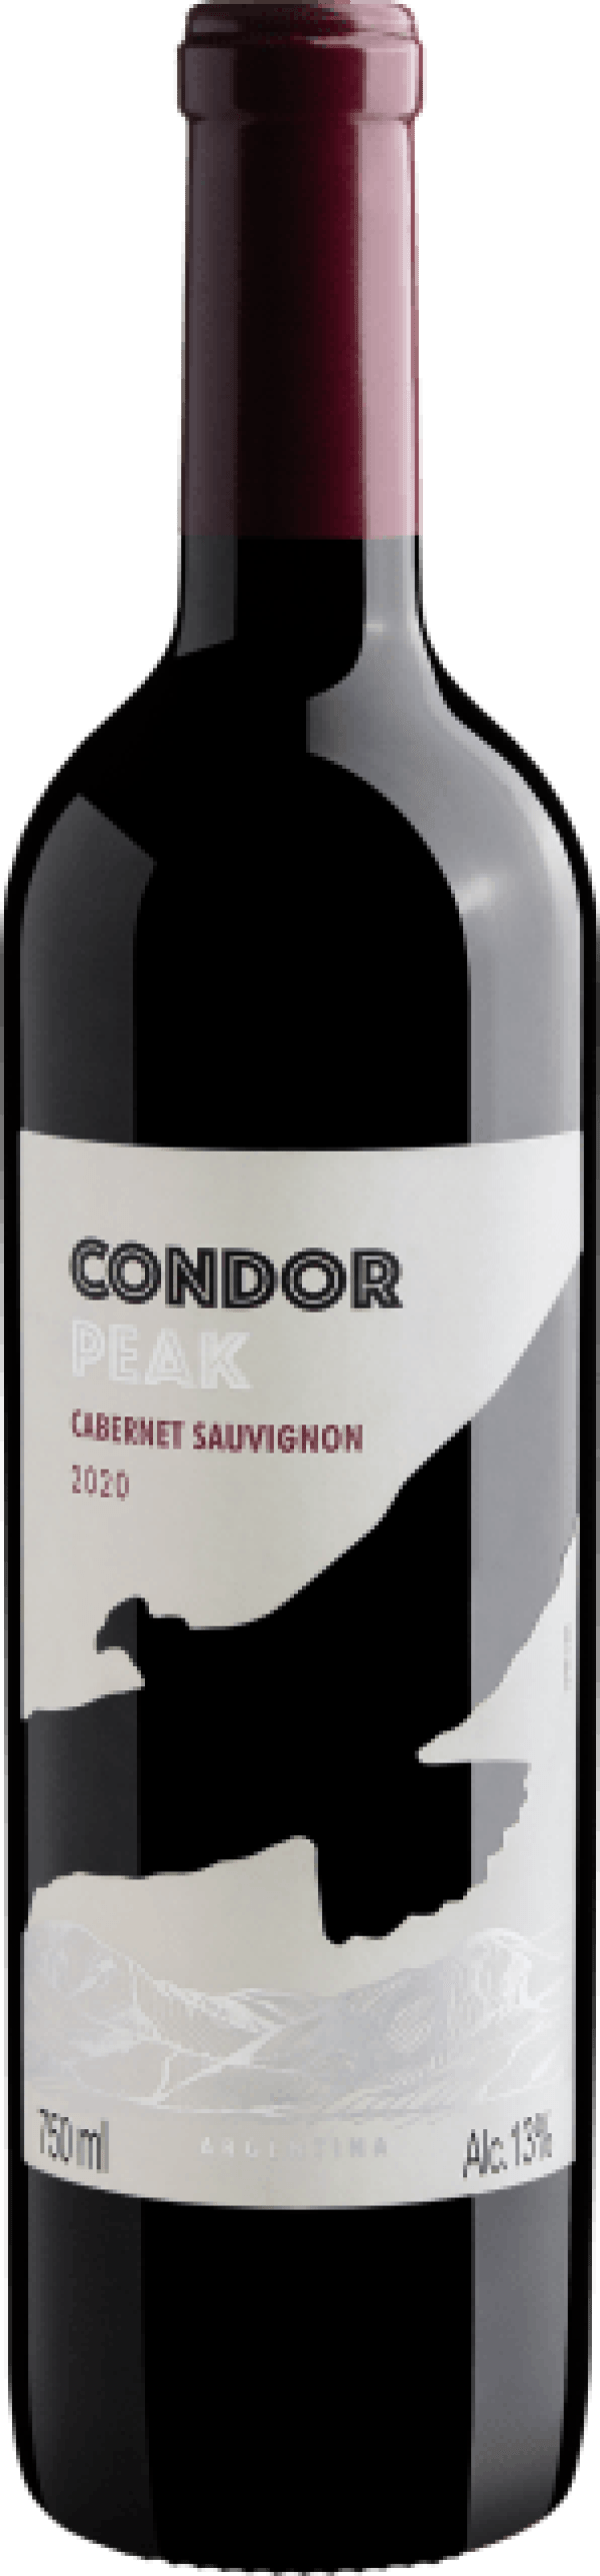 Condor Peak Cabernet Sauvignon 2020